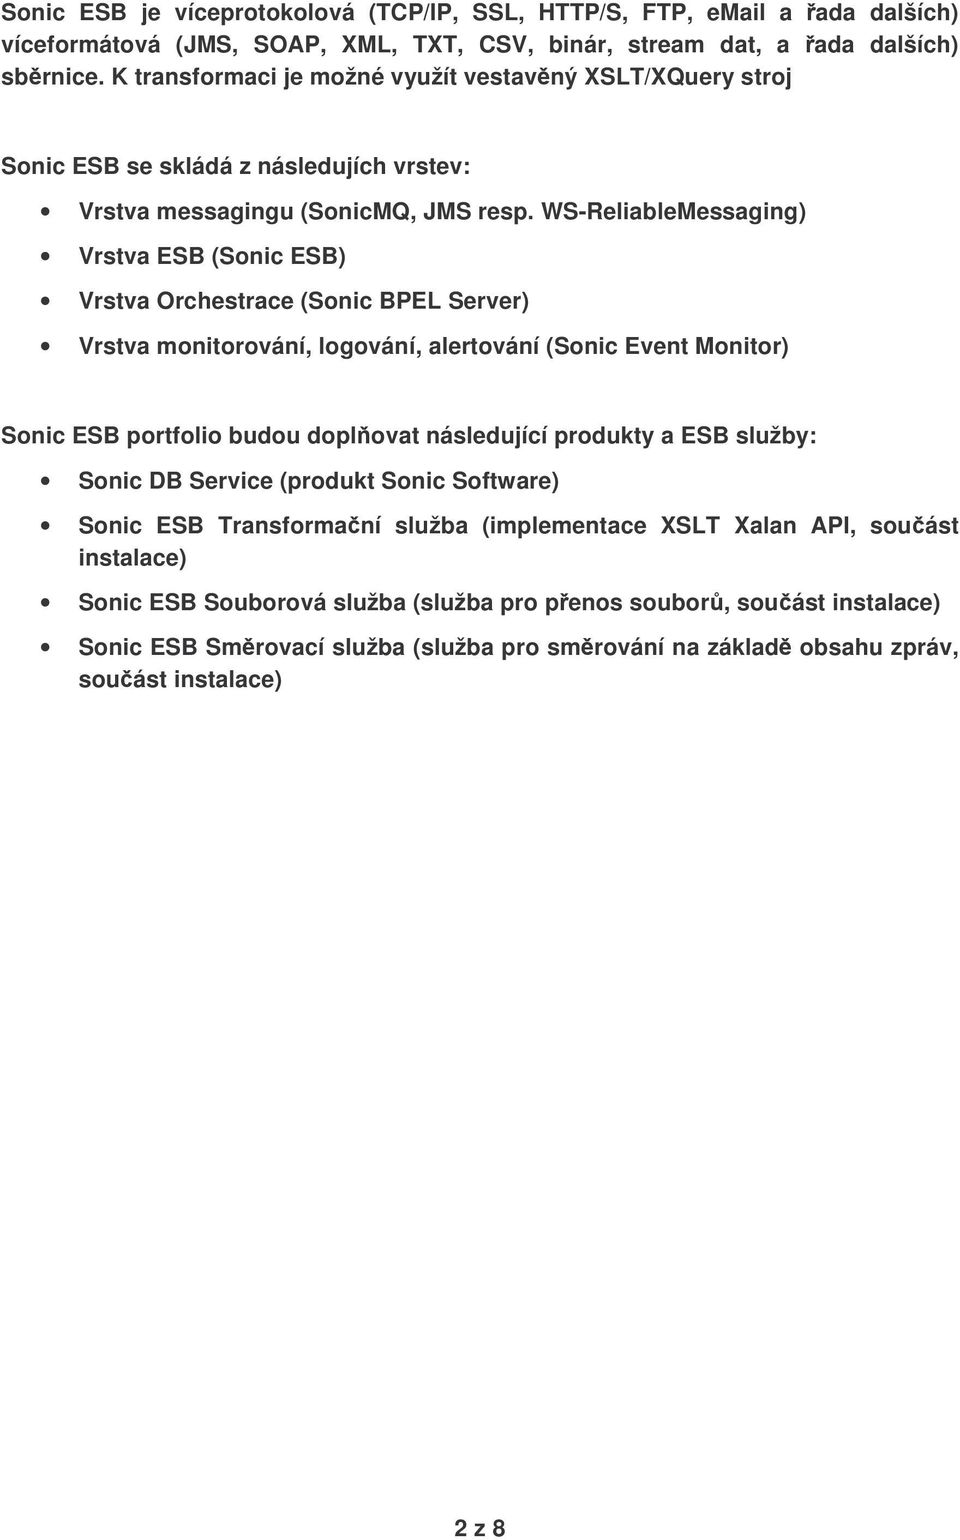 WS-ReliableMessaging) Vrstva ESB (Sonic ESB) Vrstva Orchestrace (Sonic BPEL Server) Vrstva monitorování, logování, alertování (Sonic Event Monitor) Sonic ESB portfolio budou doplovat následující